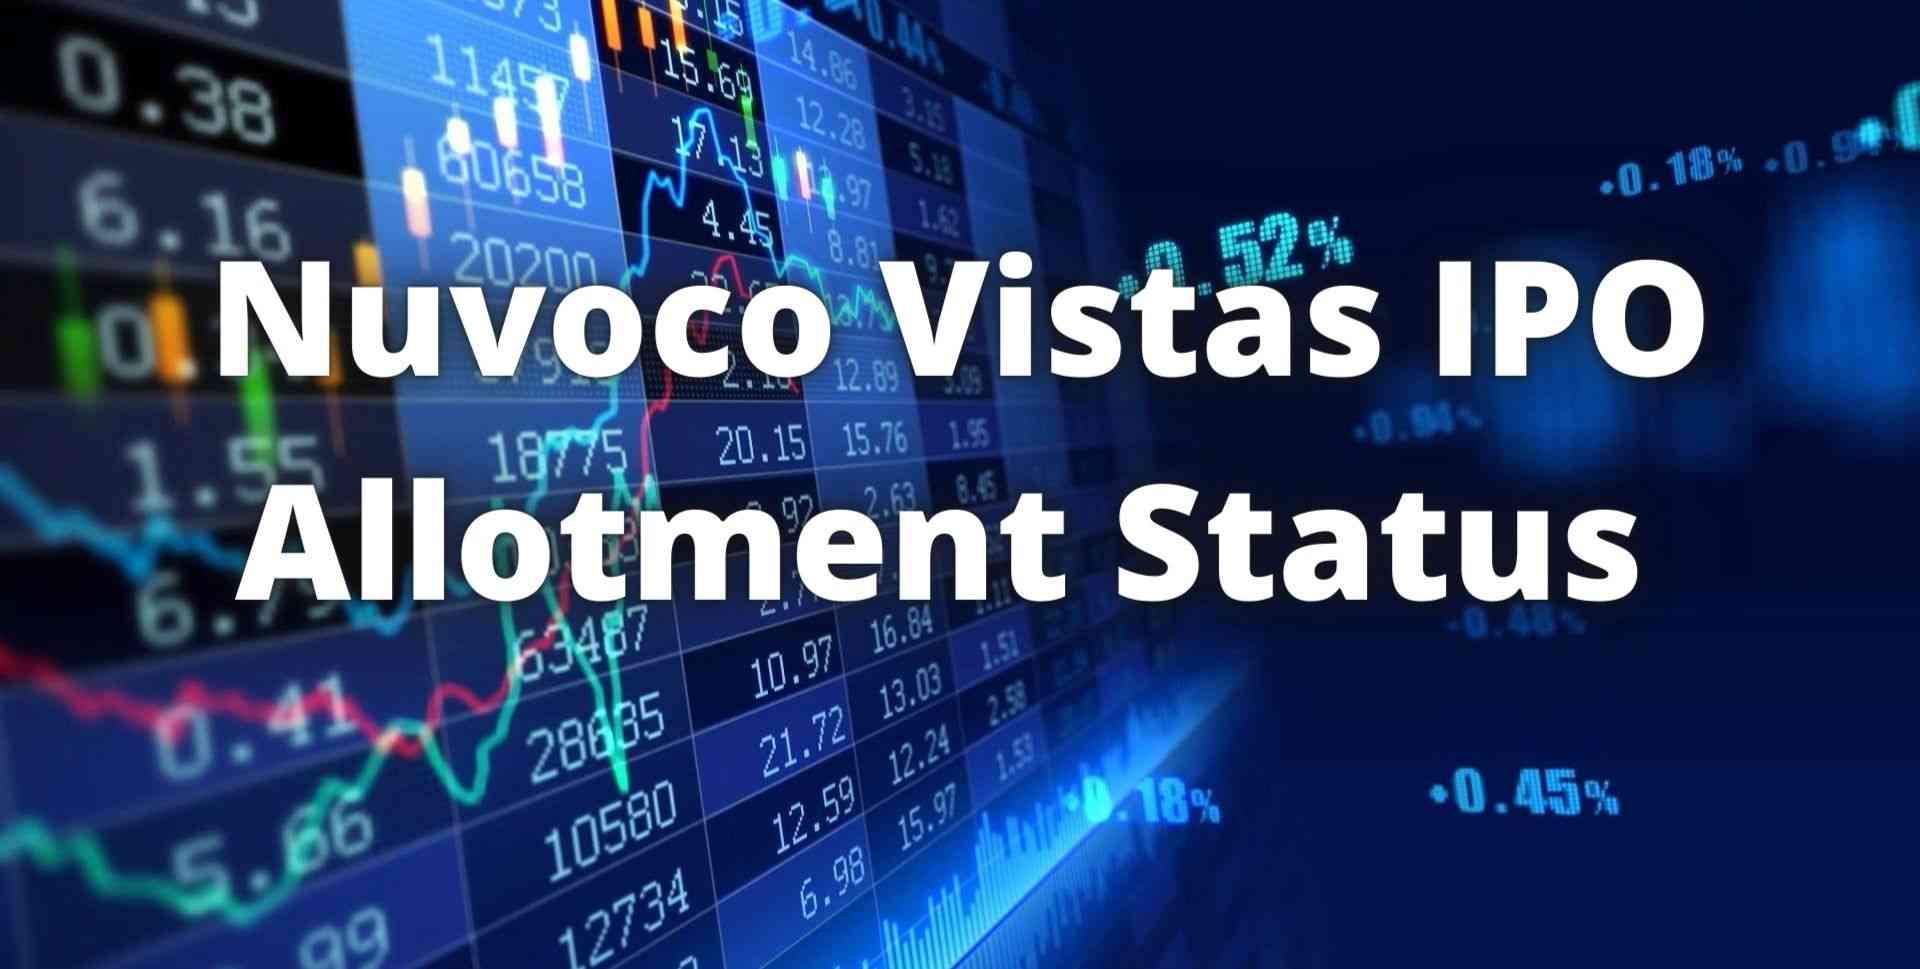 Check Nuvoco Vistas IPO Allotment Status bseindia.com, linkintime.com.